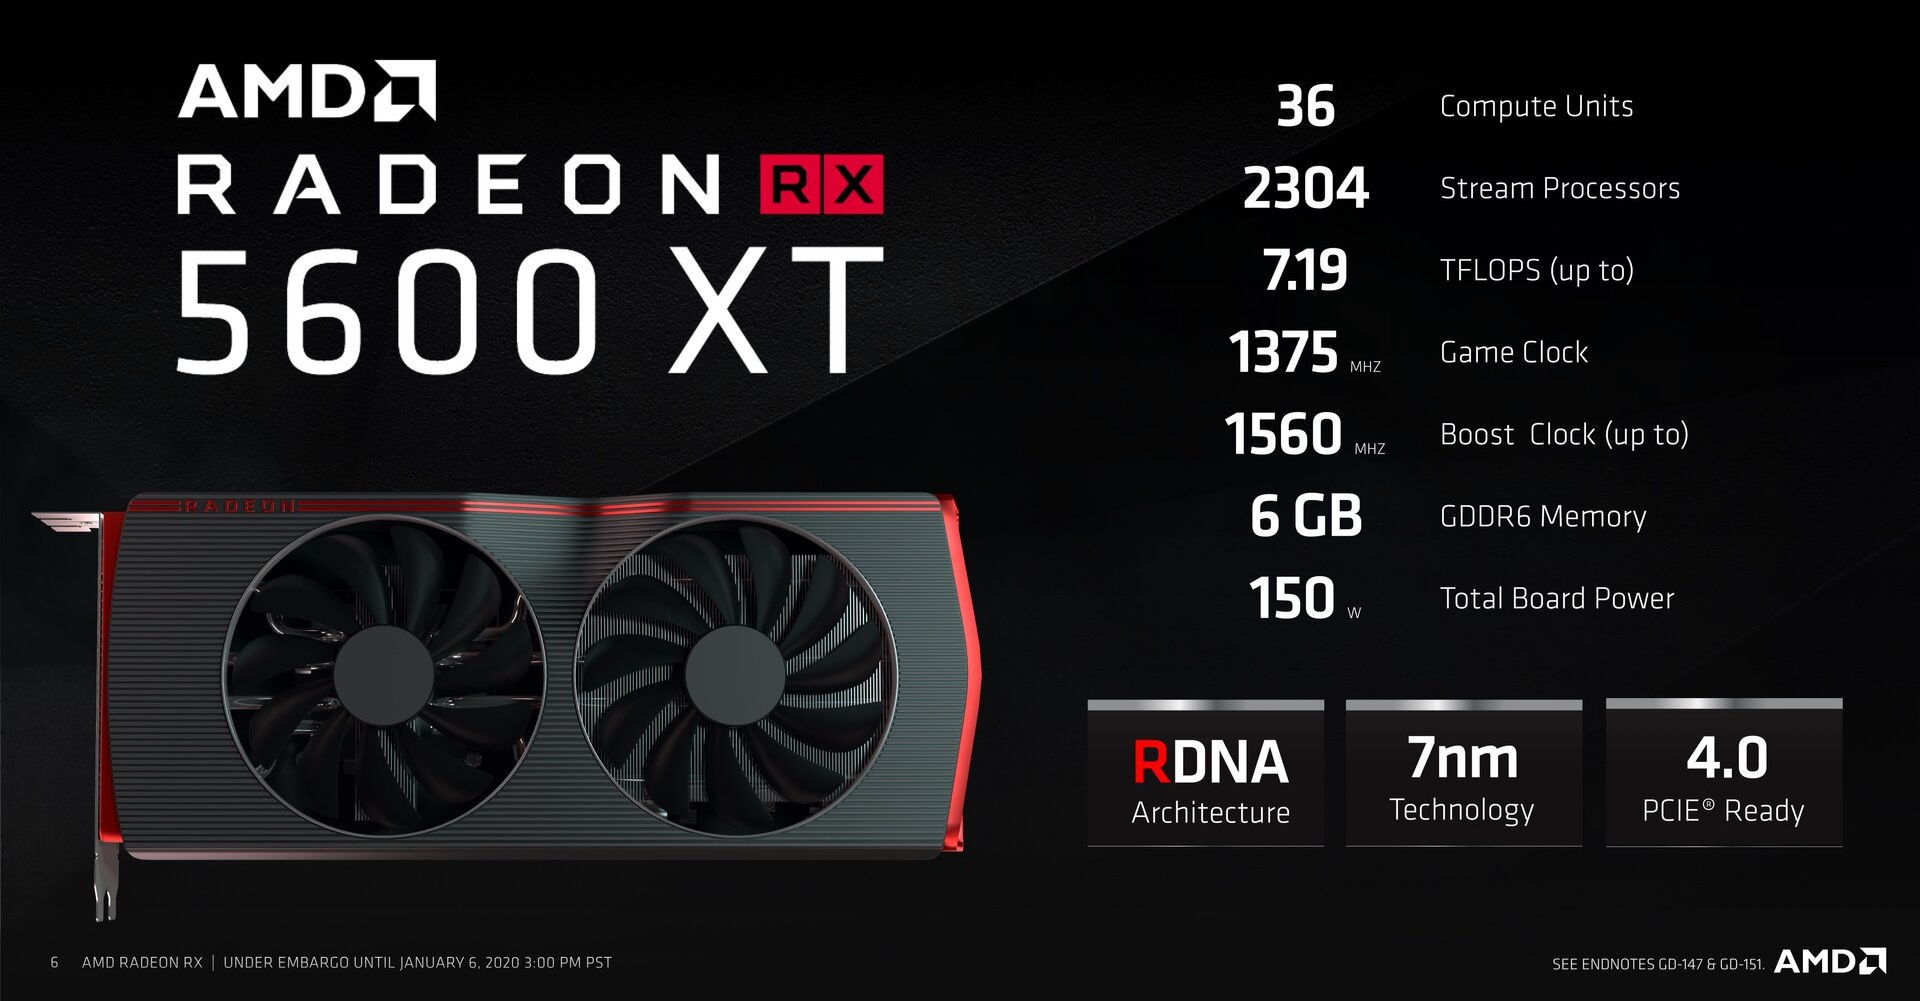 Radeon RX 5600 XT specs